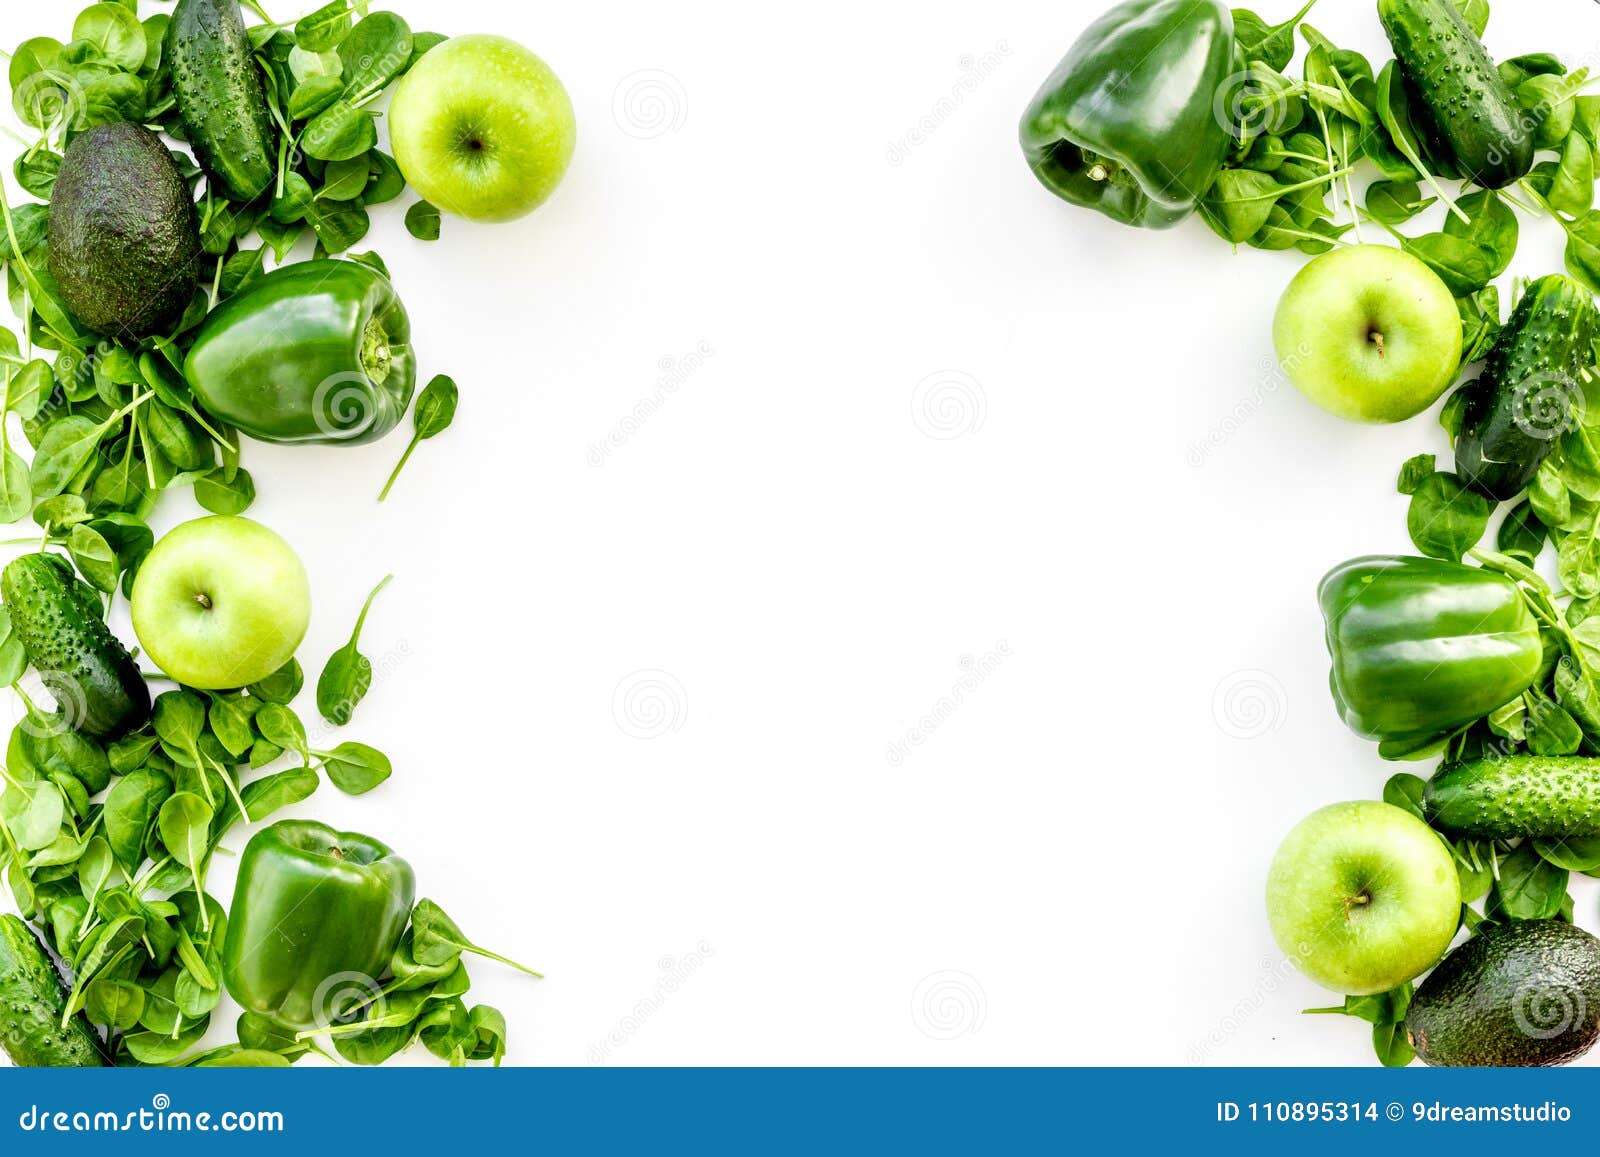 Rau xanh (green vegetables): Khám phá nguồn cung cấp dinh dưỡng tươi ngon cho cơ thể với những loại rau xanh tươi mát như bông cải xanh, rau muống, cải bó xôi, bí đỏ...Hãy nhấn vào ảnh để chiêm ngưỡng những món ăn đầy màu sắc và dinh dưỡng từ rau xanh.